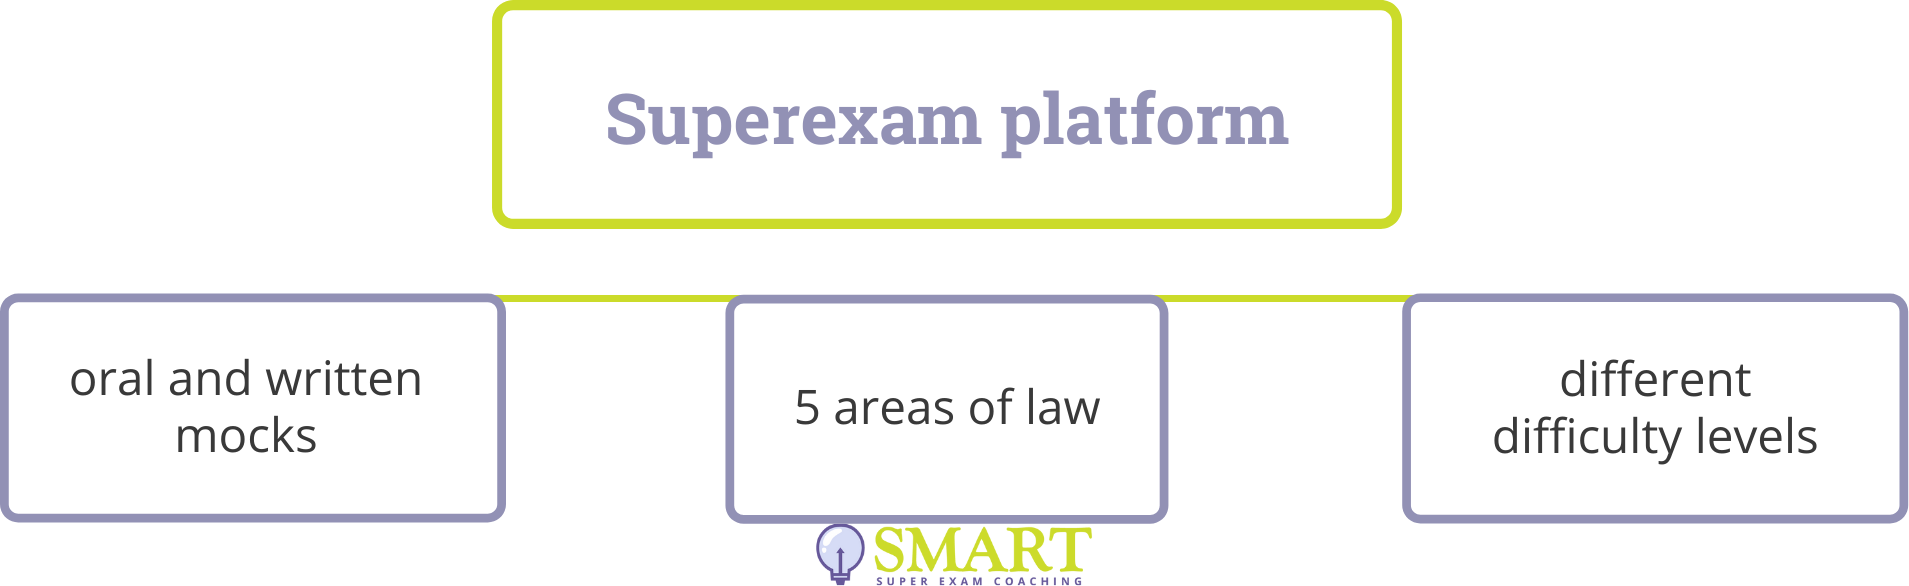 Our Superexam Platform